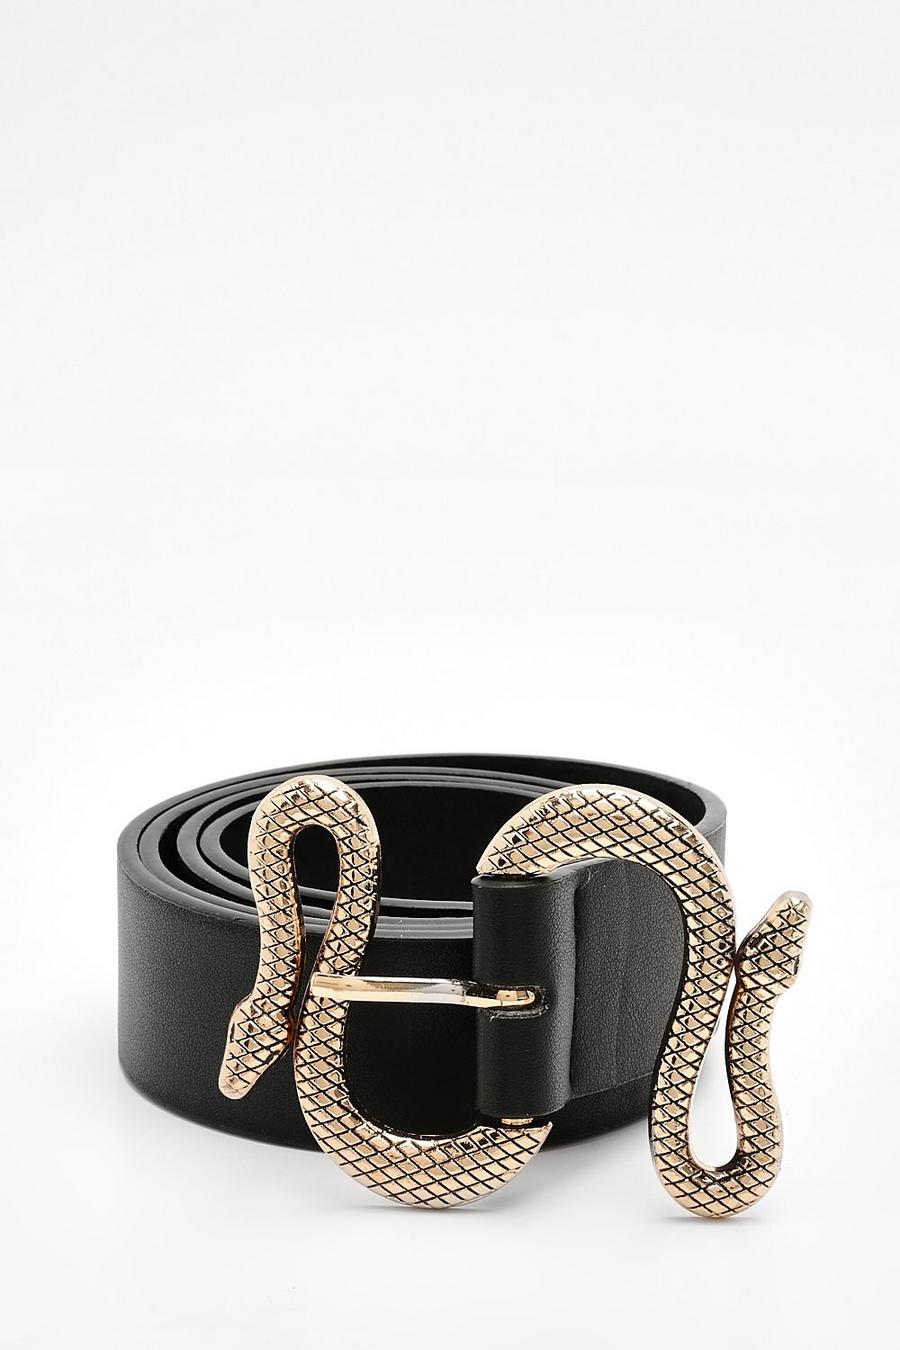 Black Snake Wrapped Belt 